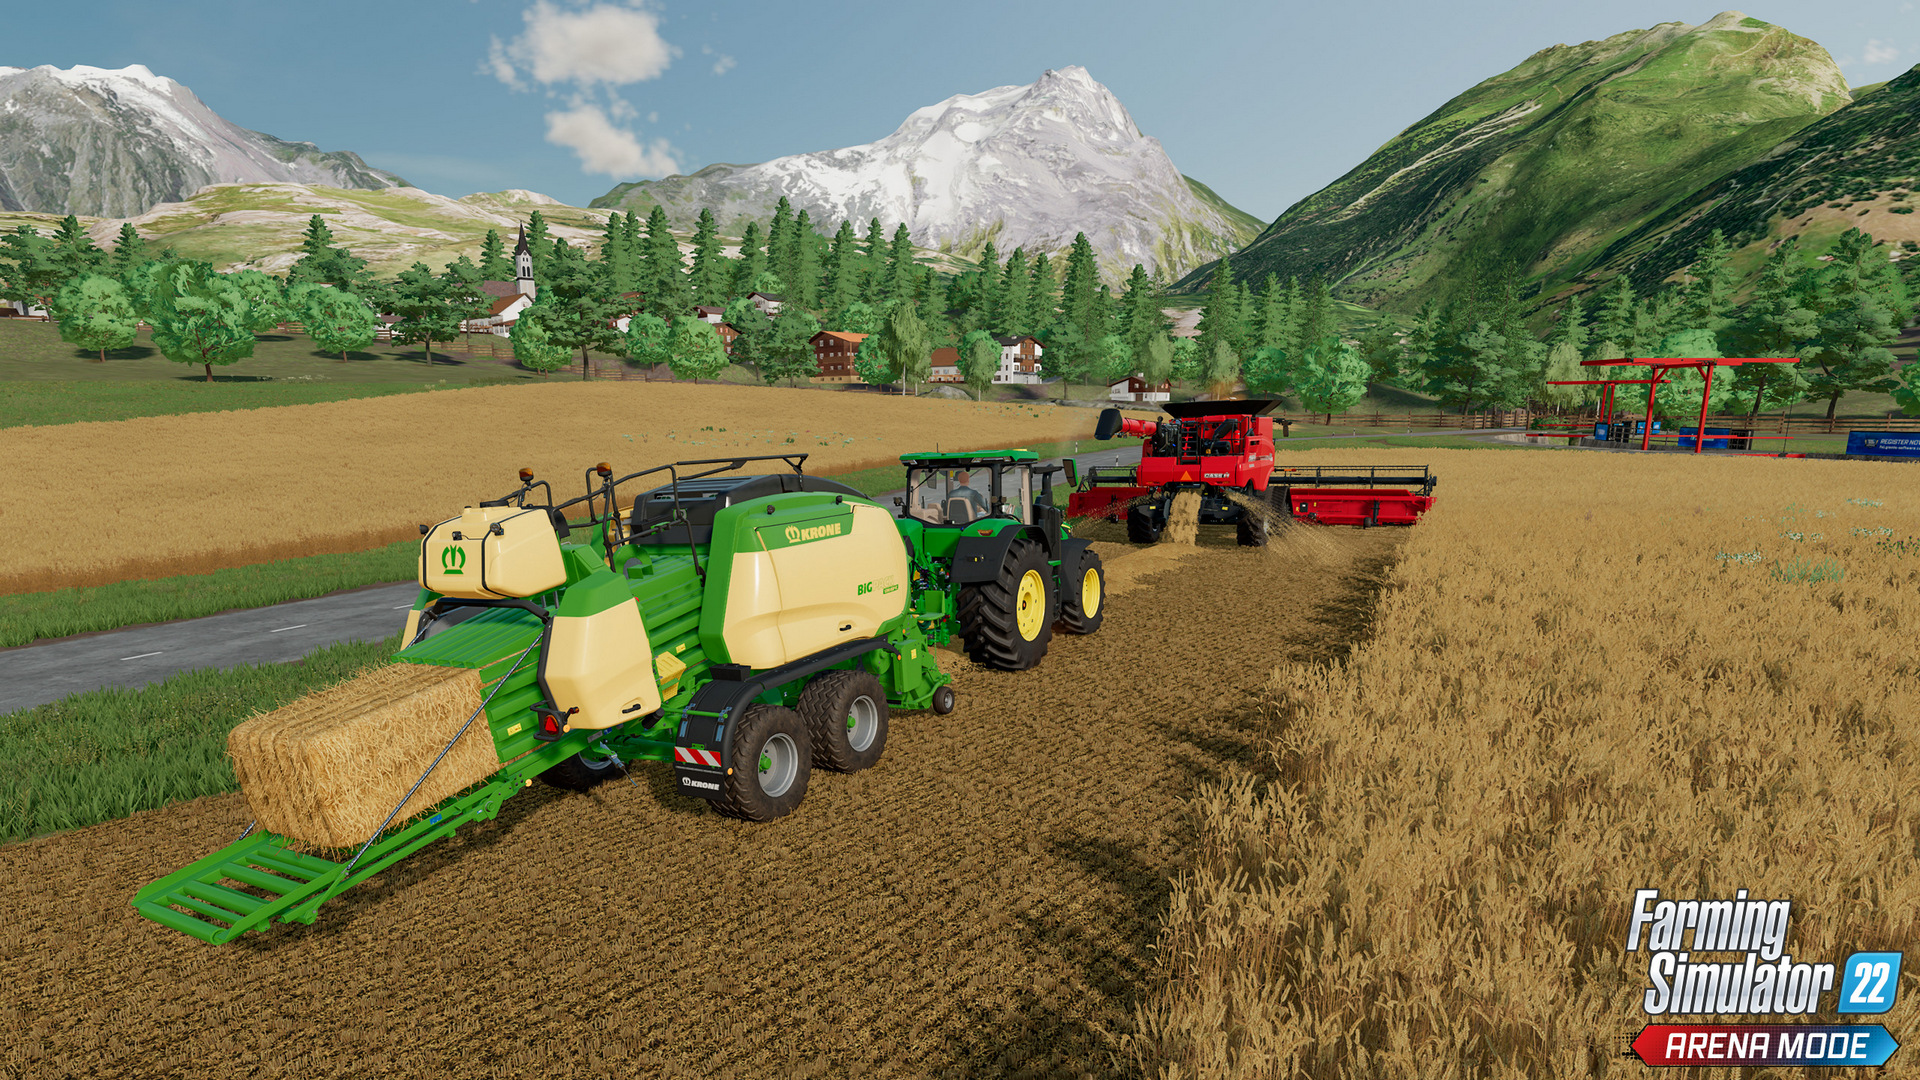 Landwirtschafts-Simulator 22 angekündigt: Termin und neue Features